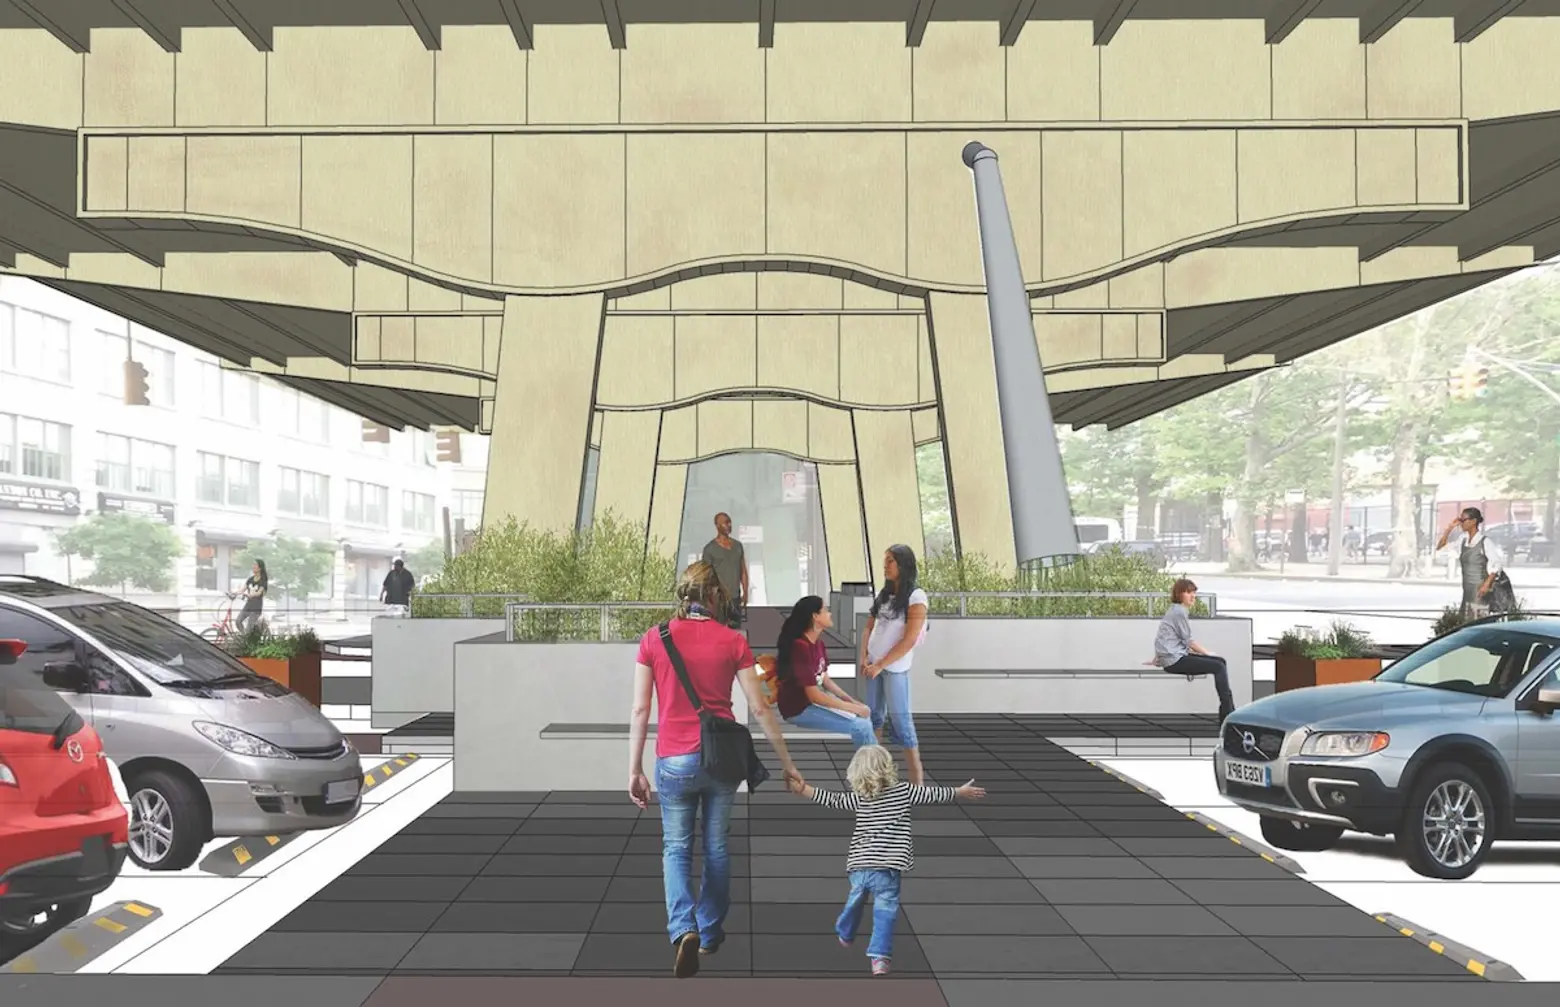 9-million-design-trust-for-public-space-plazas